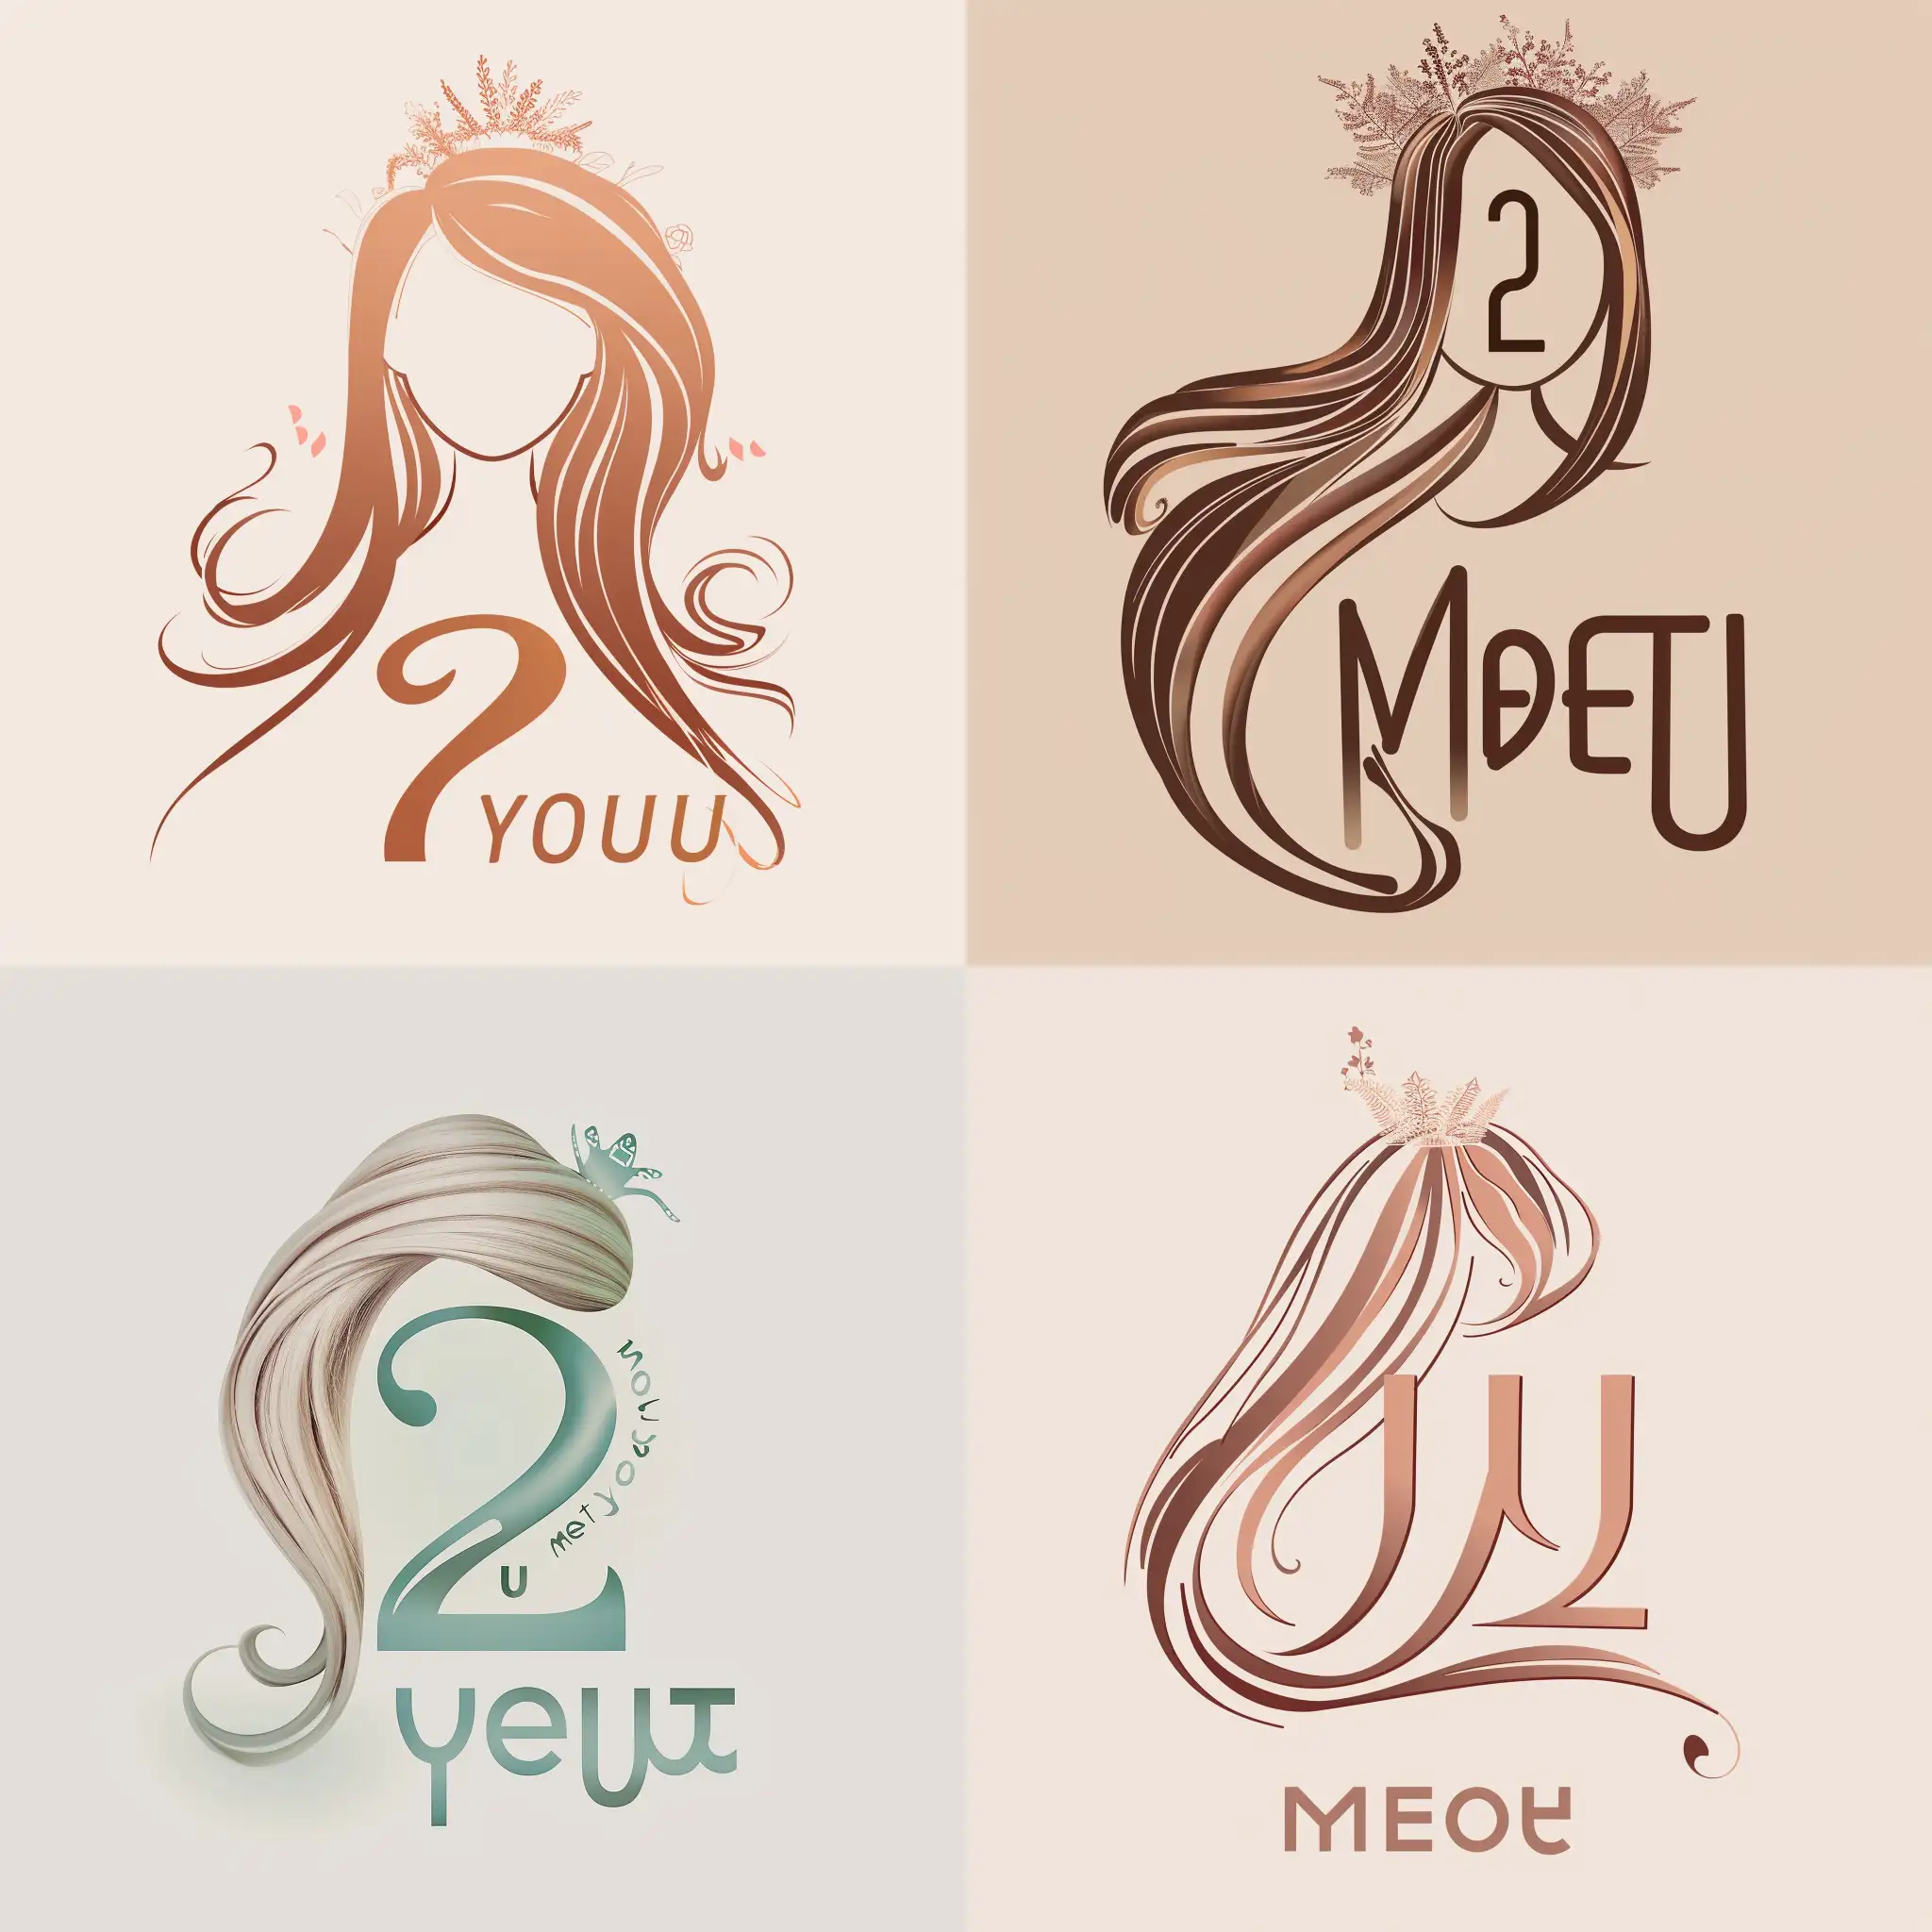 该logo为：头发显像数字2，头发尾部连接着MeetYou中的字母u，头上有一个小花环，字母Meet则在头发的内部，整体颜色为淡色